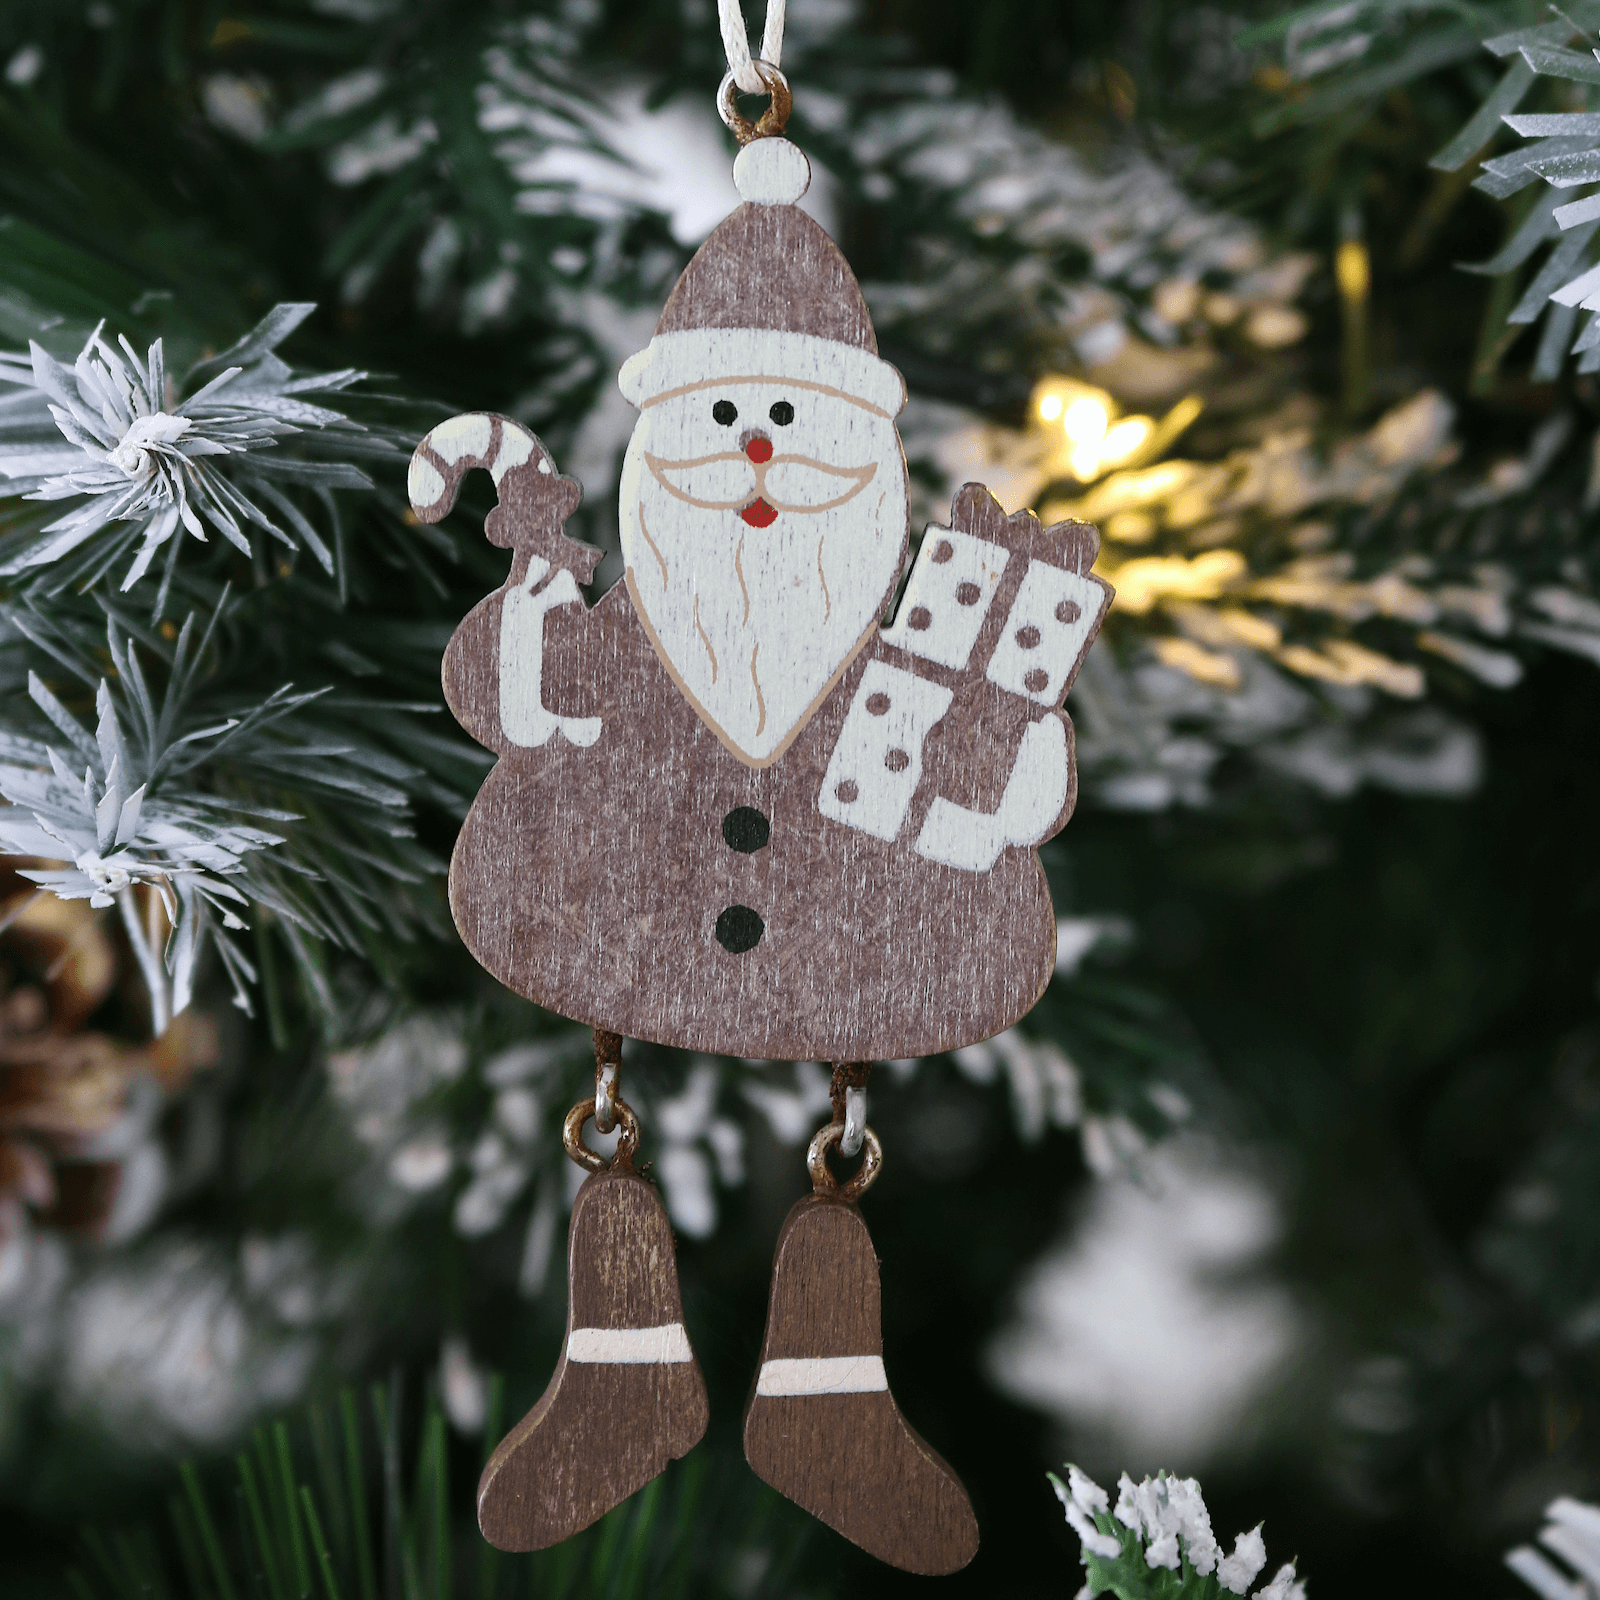 Mr Crimbo 6pk Novelty Hanging Legs Wooden Tree Decorations - MrCrimbo.co.uk -XS4526 - Santa -christmas tree decorations